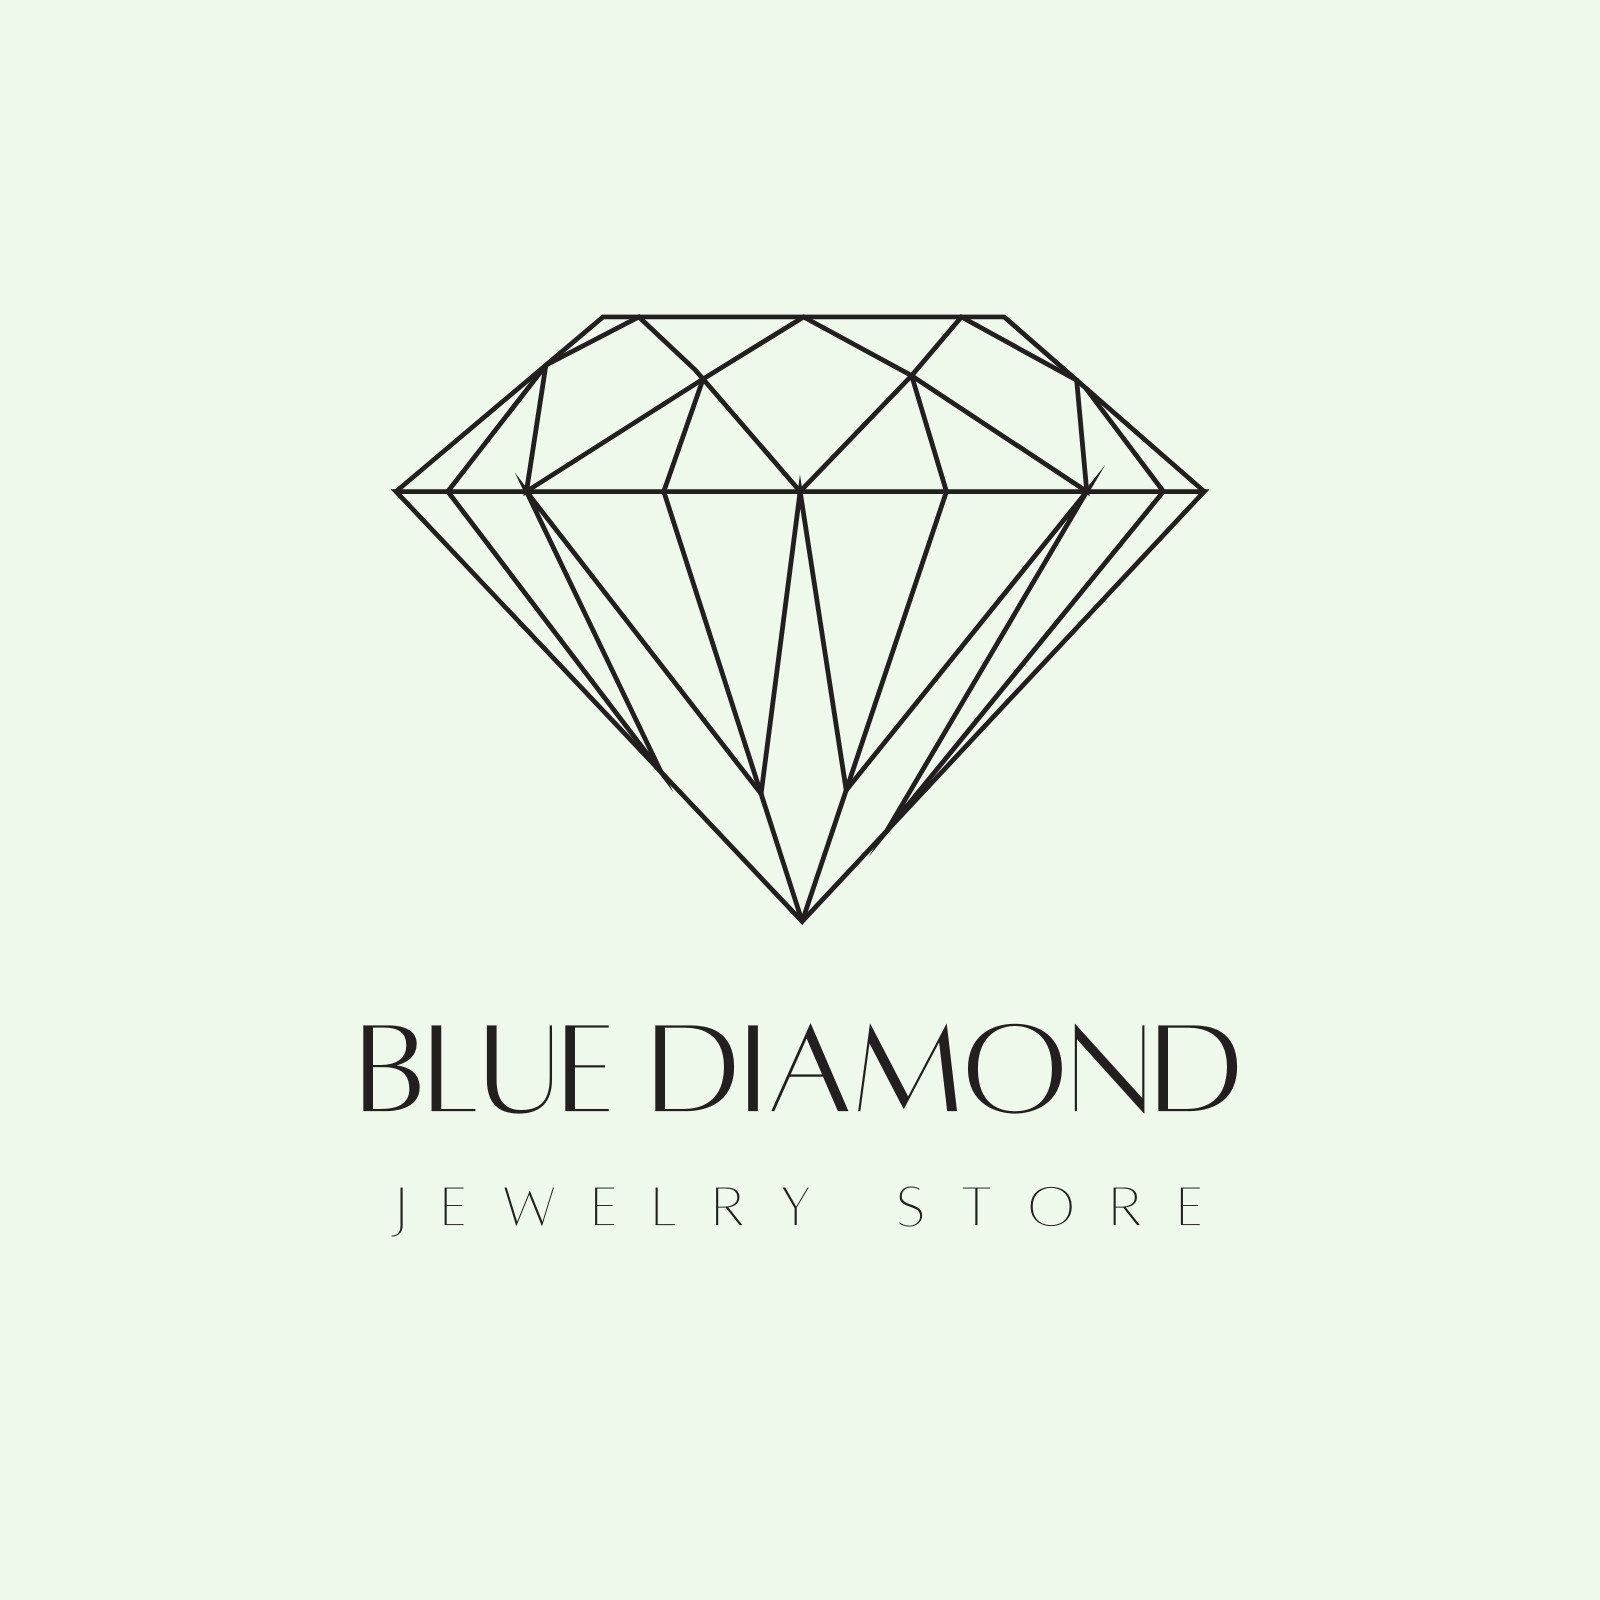 blue diamond logos